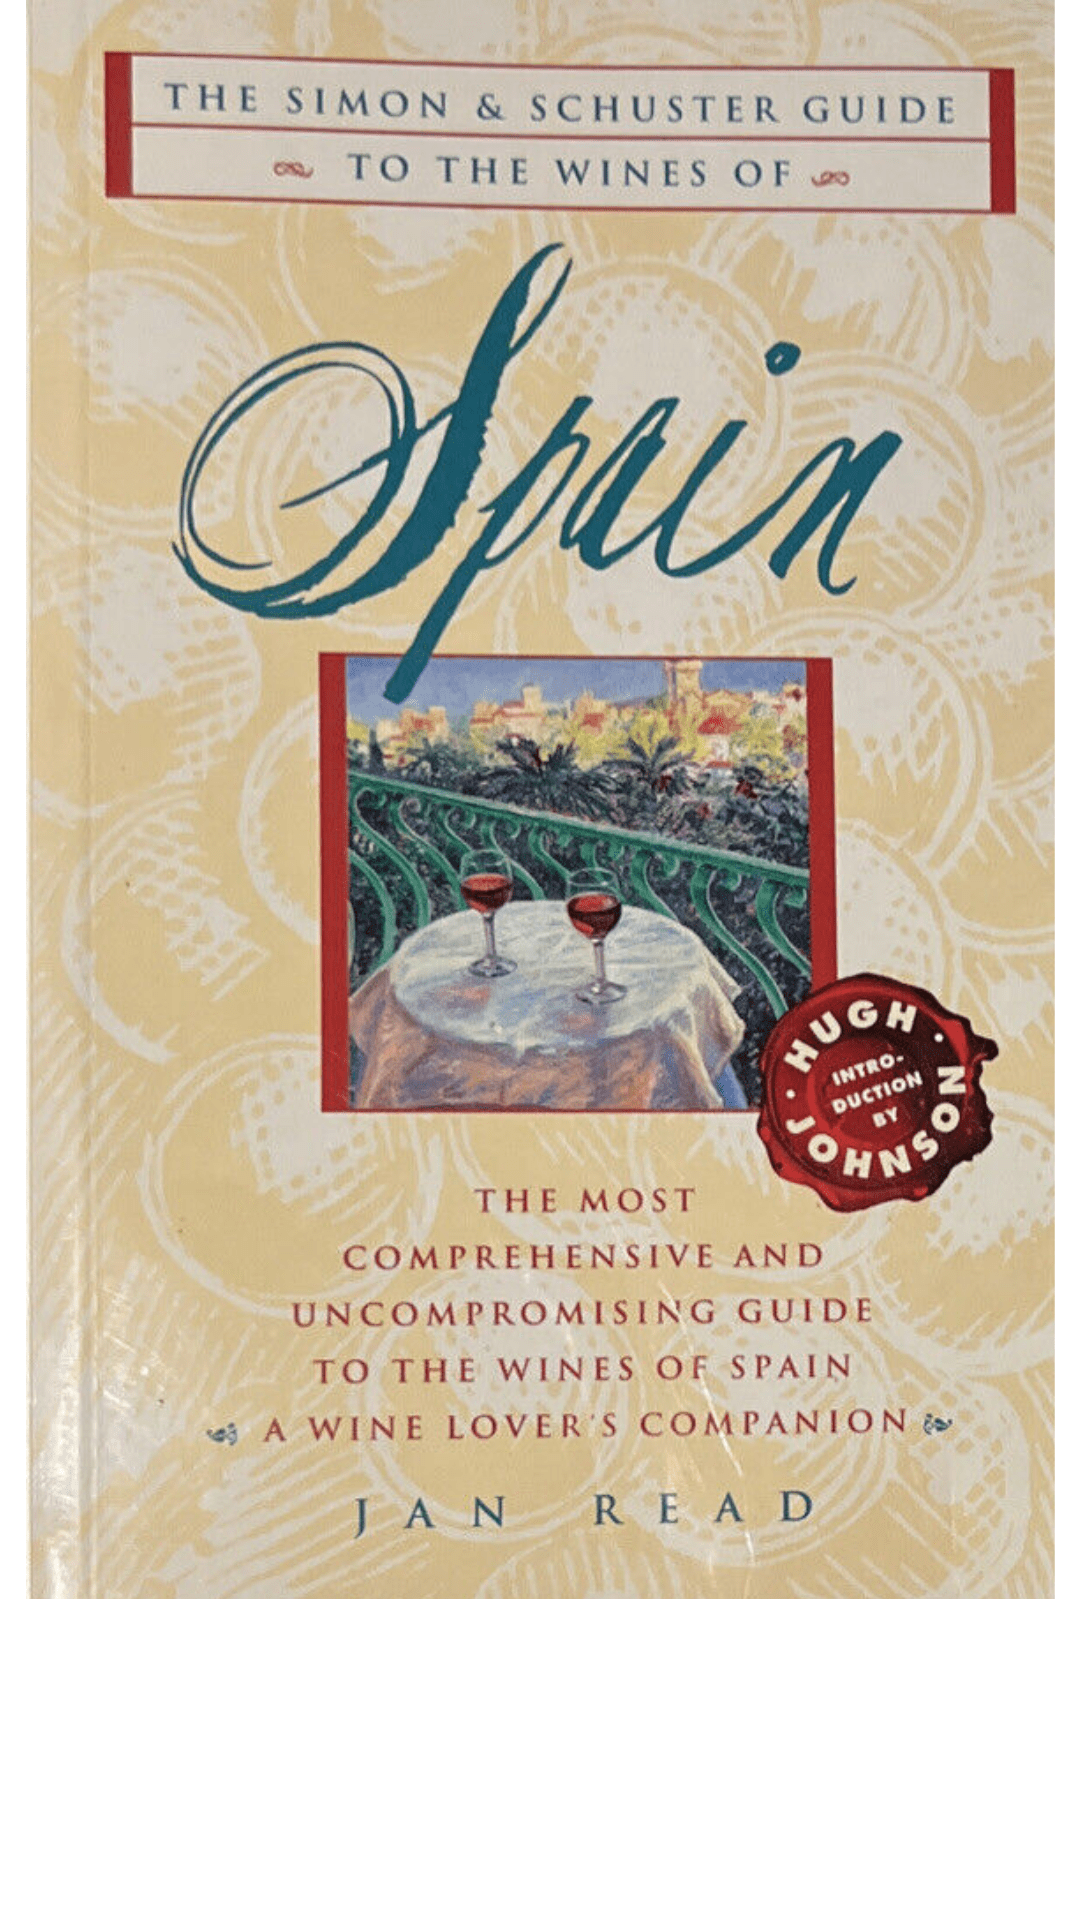 Wines of Spain by Jan Read